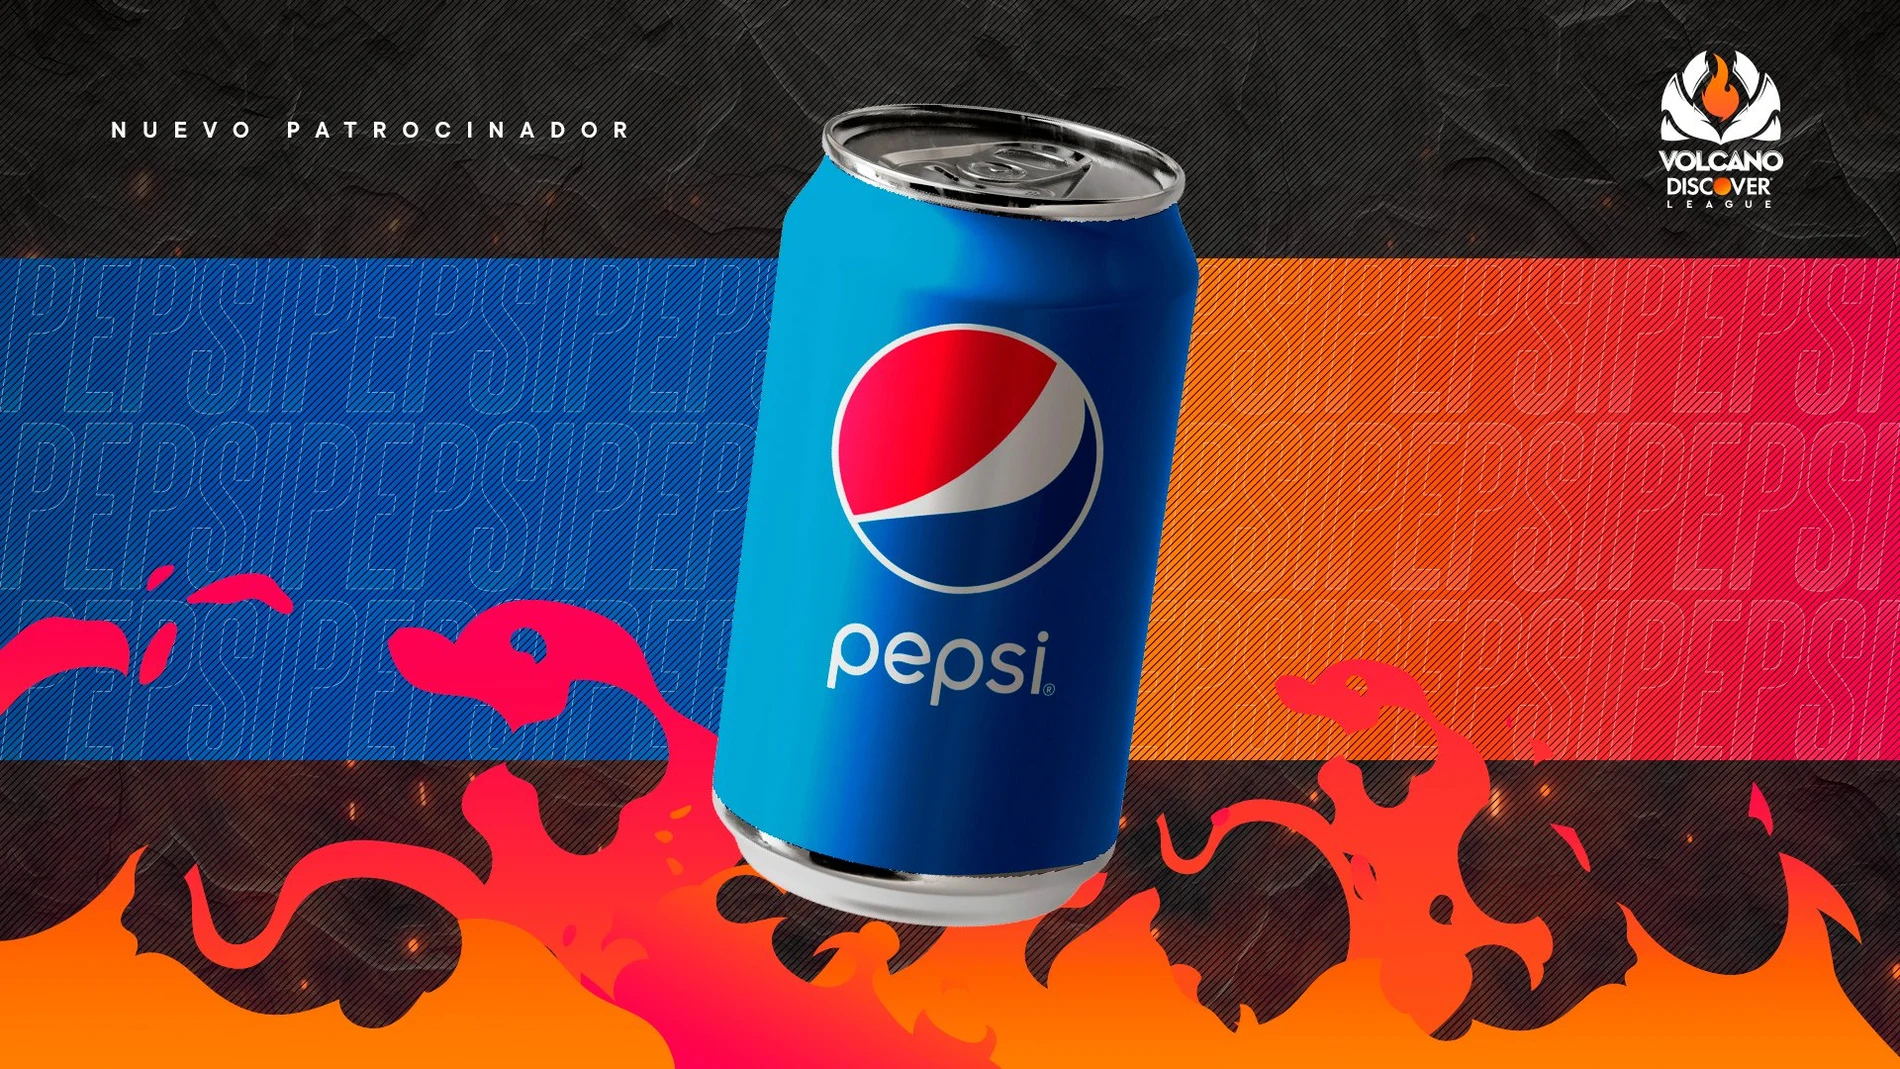 Pepsi será sponsor oficial de la Volcano Discover League